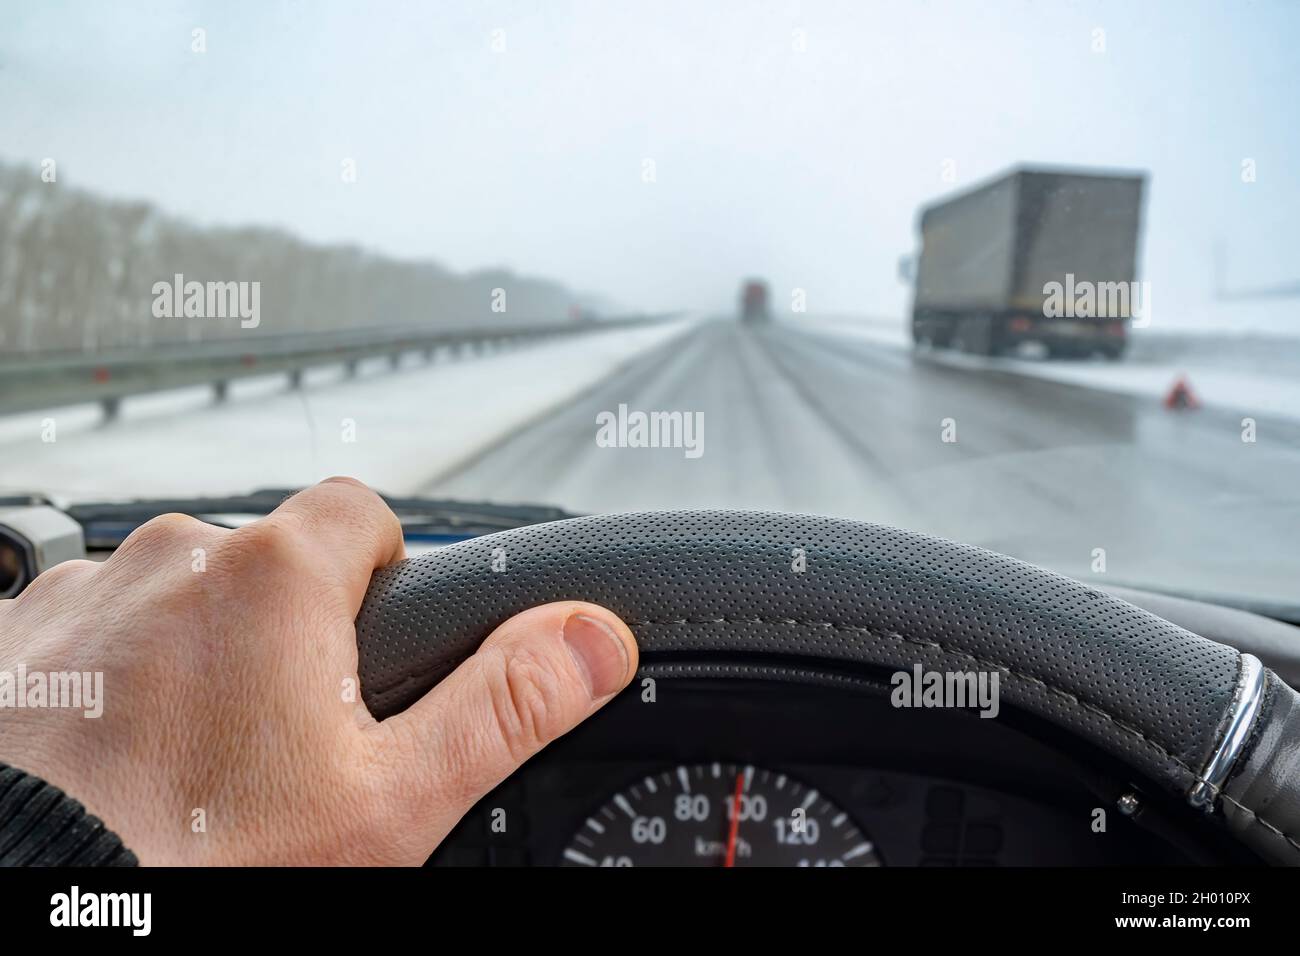 Autofahrer Hand auf das Lenkrad während der Fahrt auf einer rutschigen  Straße Stockfotografie - Alamy